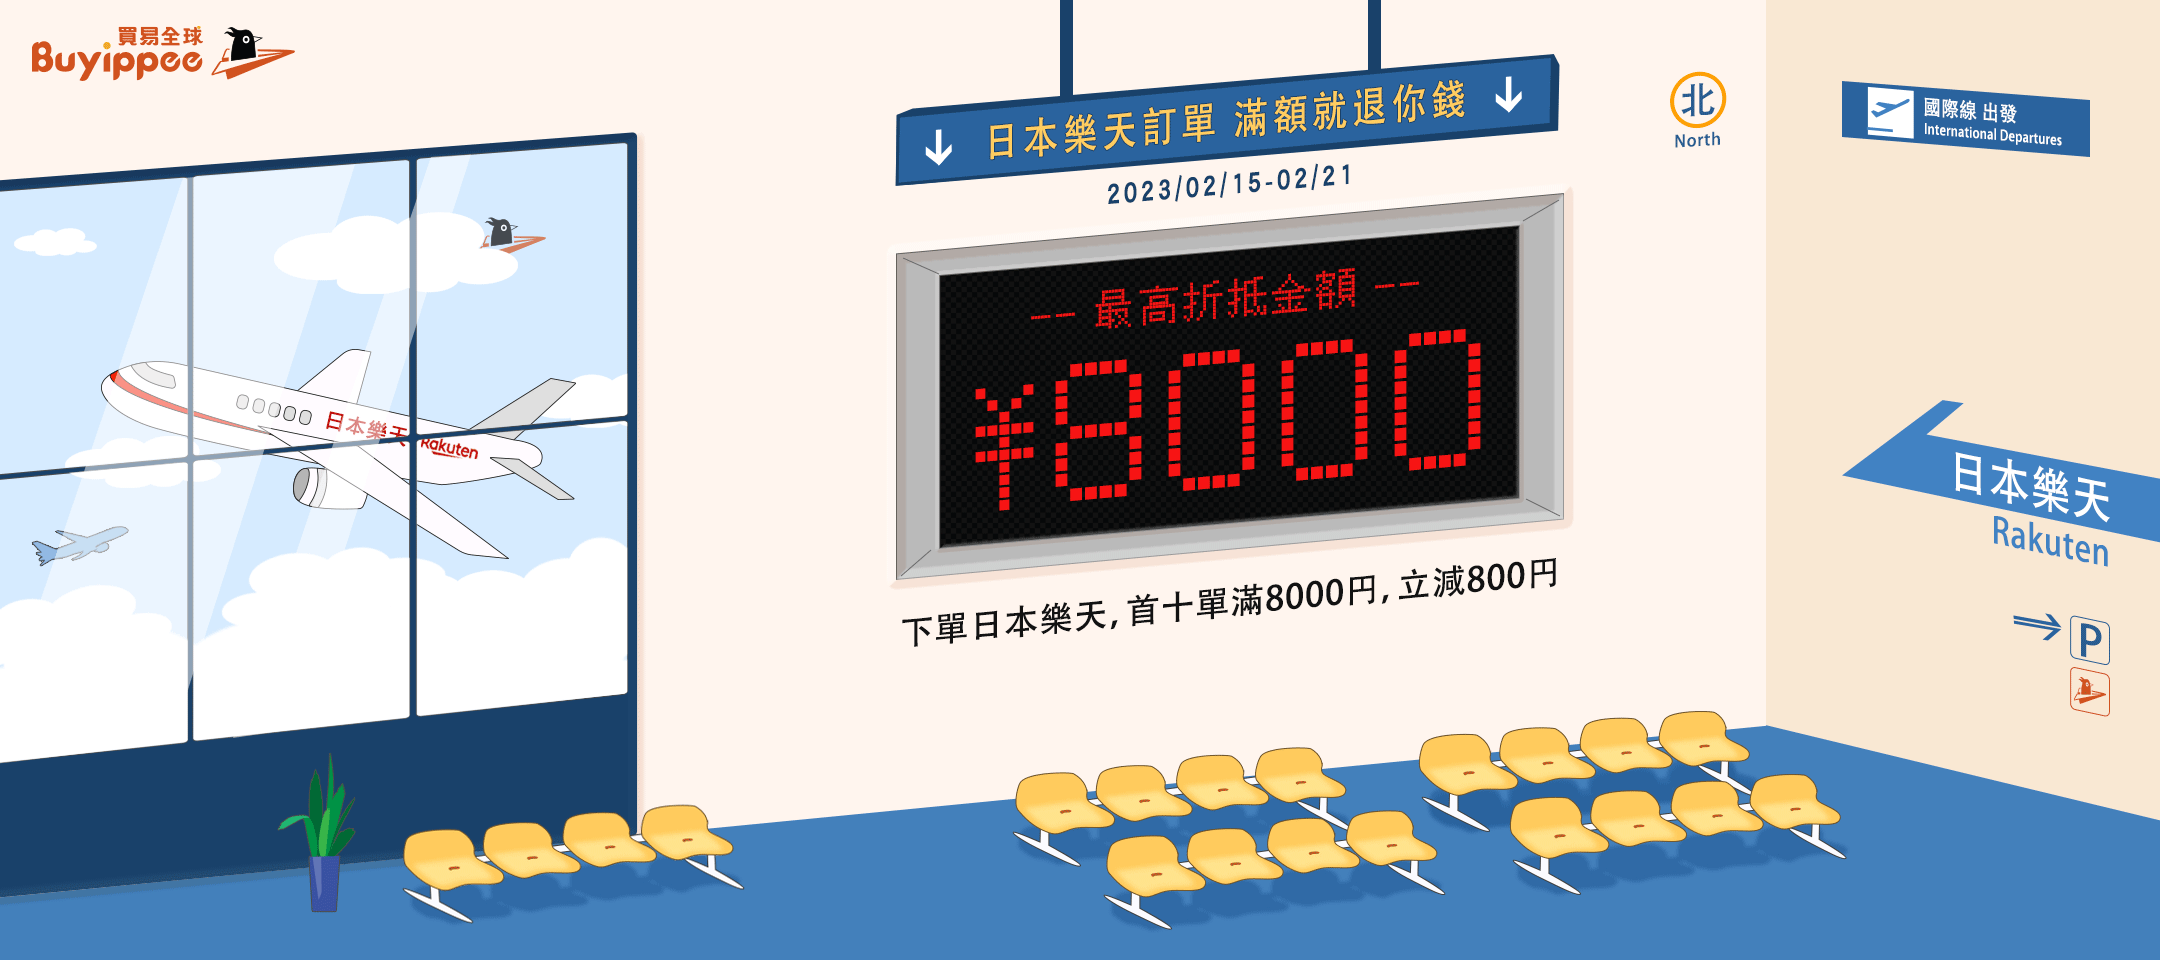 buyippeex日本樂天最強企劃,下單日本樂天滿額最高折抵8000日圓!